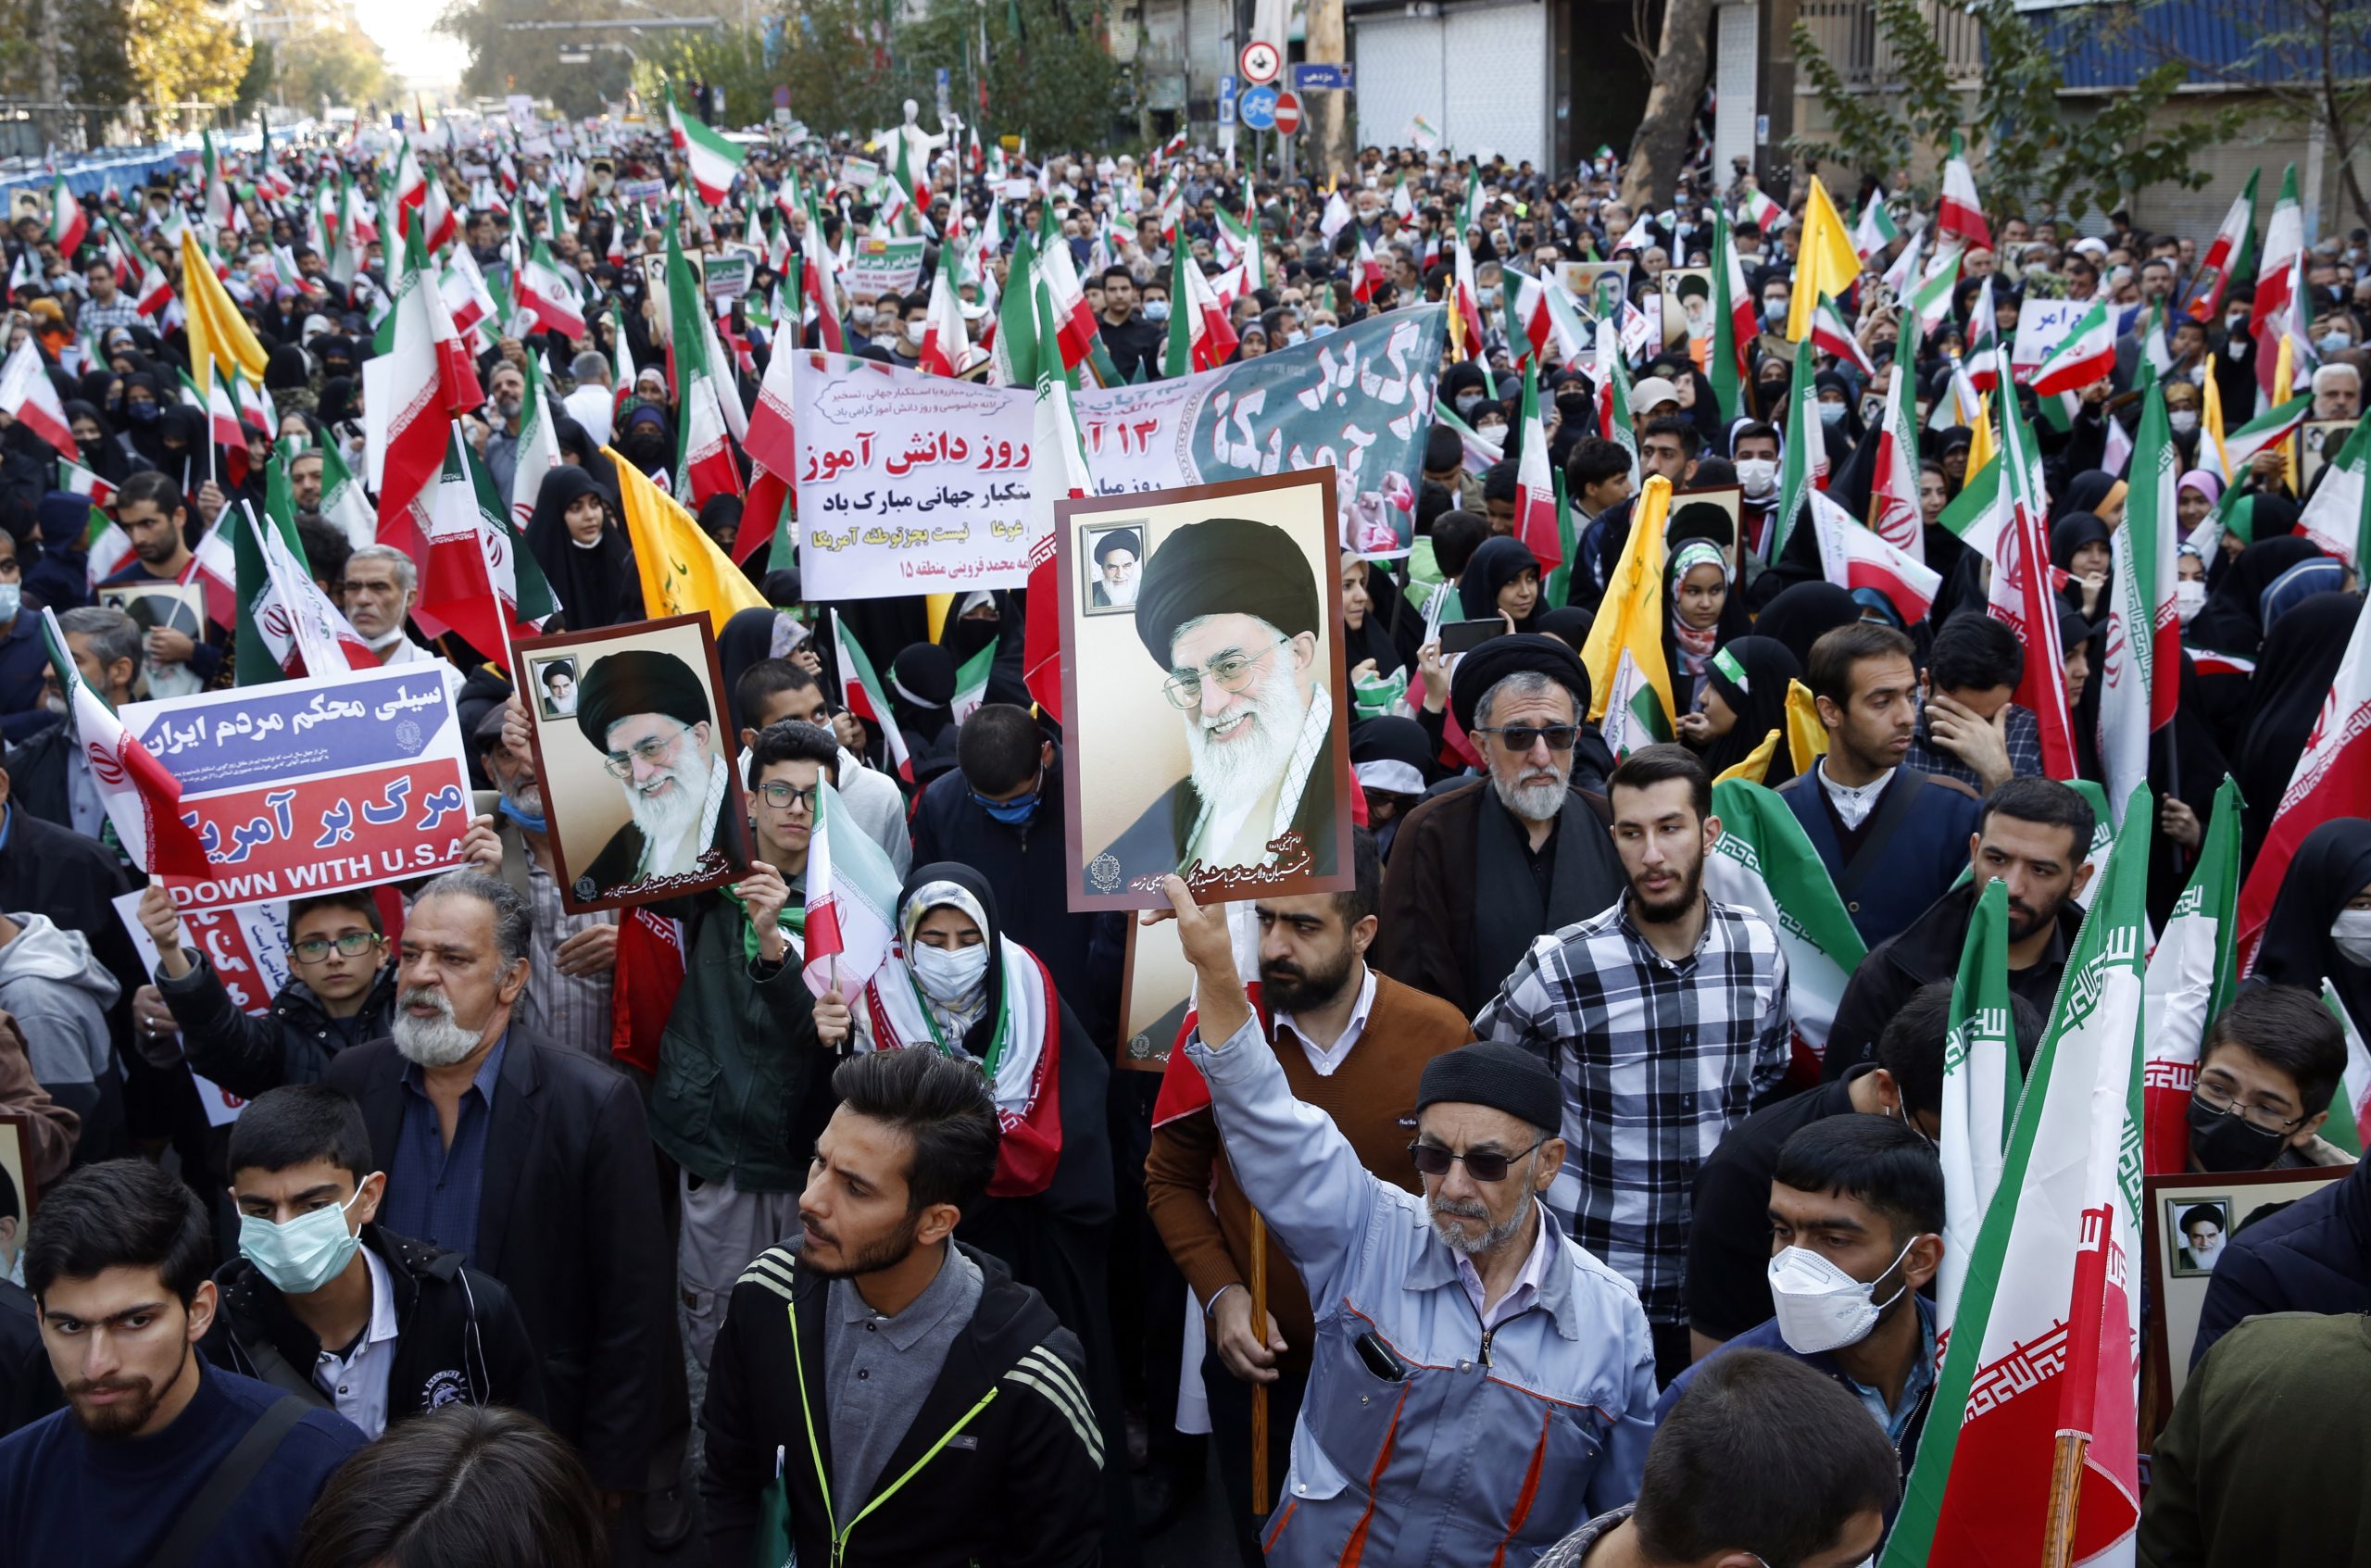 看世界／伊朗官方集会庆祝占领美国使馆43周年 反政府抗议仍持续